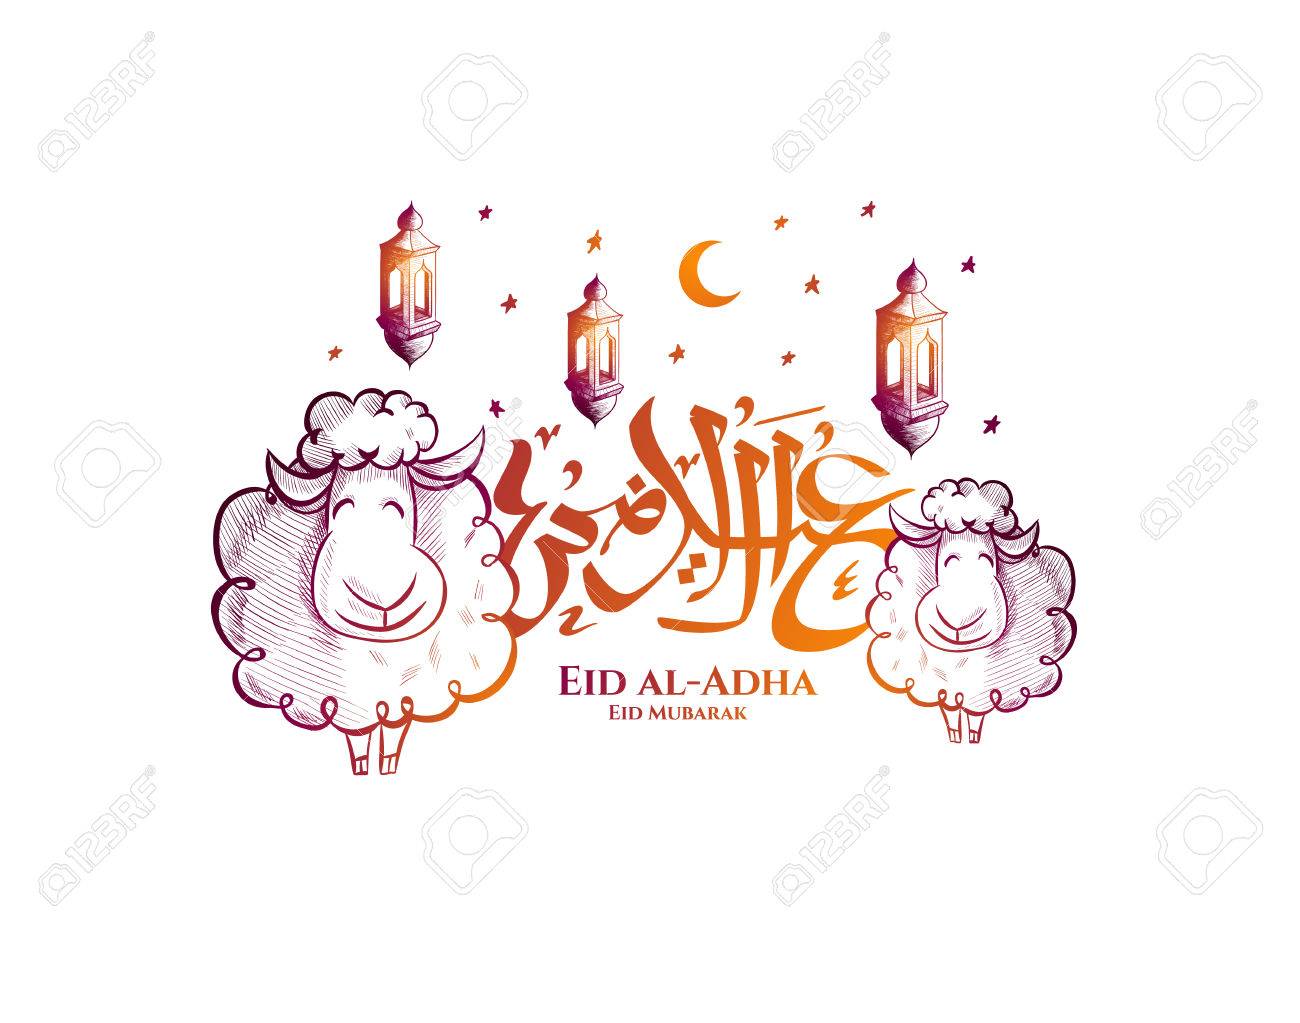 صور خروف العيد sheep png رمزيات عيد الاضحى 2020